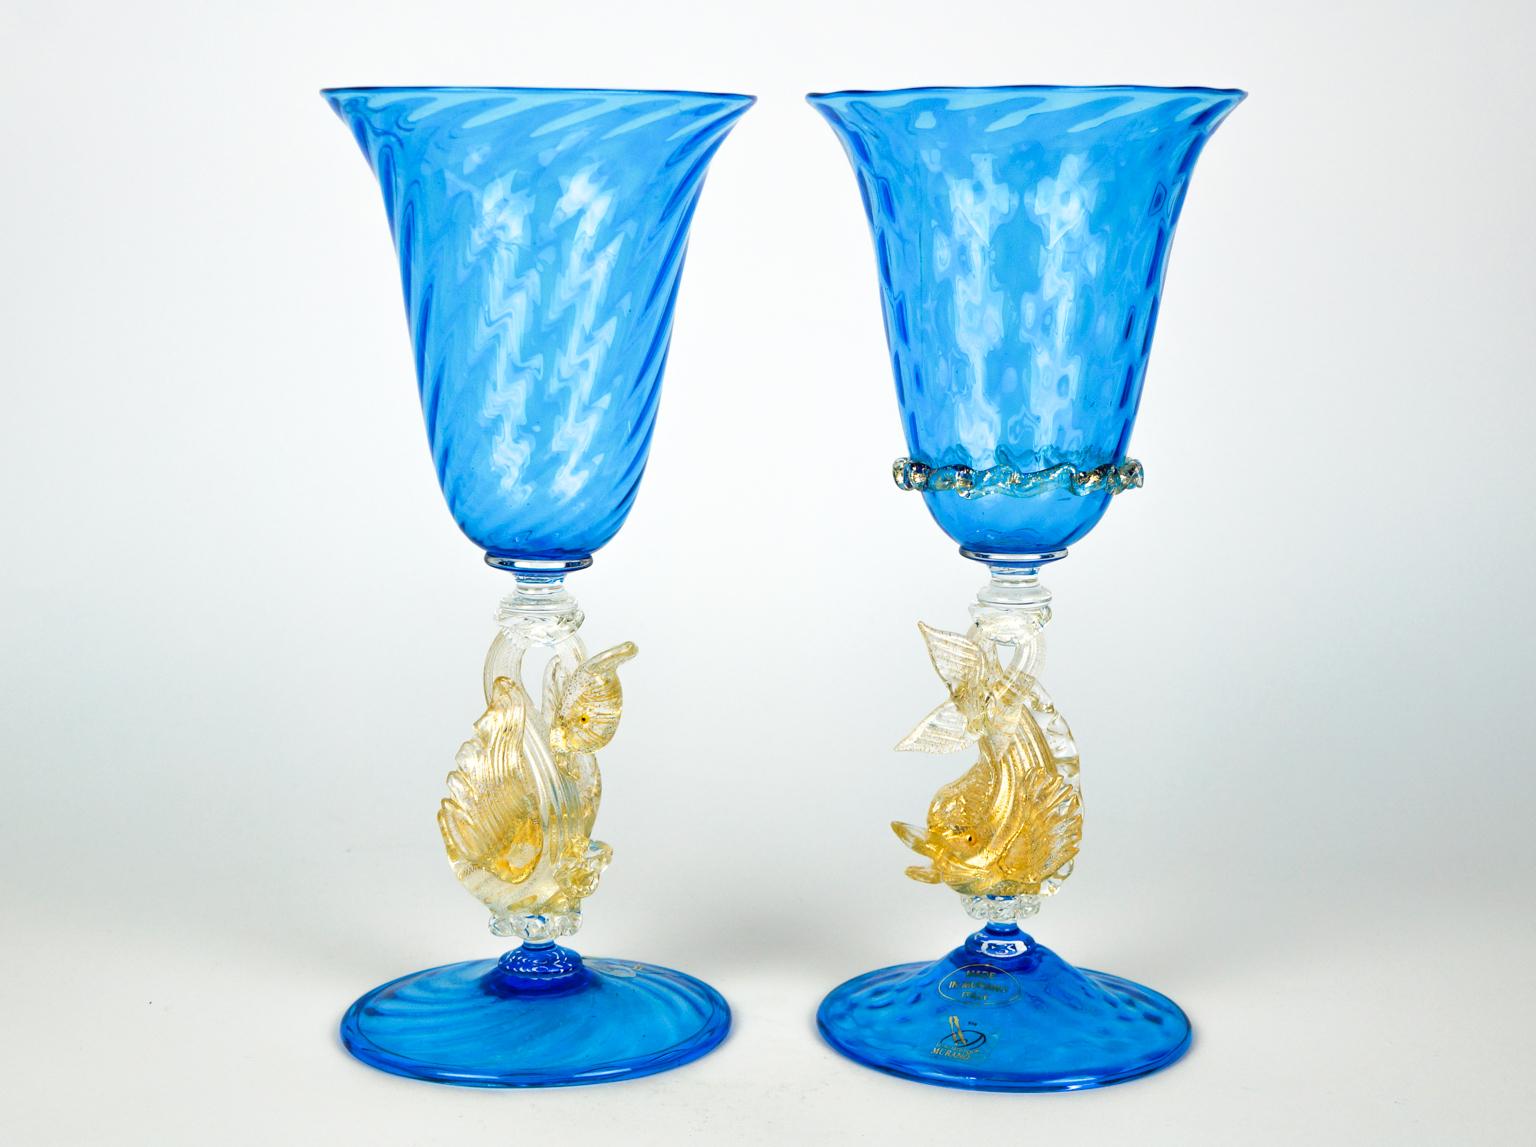 Elegante paire de gobelets en verre aigue-marine avec dauphin et cygne en feuille d'or 24 carats. 
Les objets en verre de Murano sont tous fabriqués à la main par nos célèbres artisans de Murano, ce qui rend nos Works uniques et inimitables.